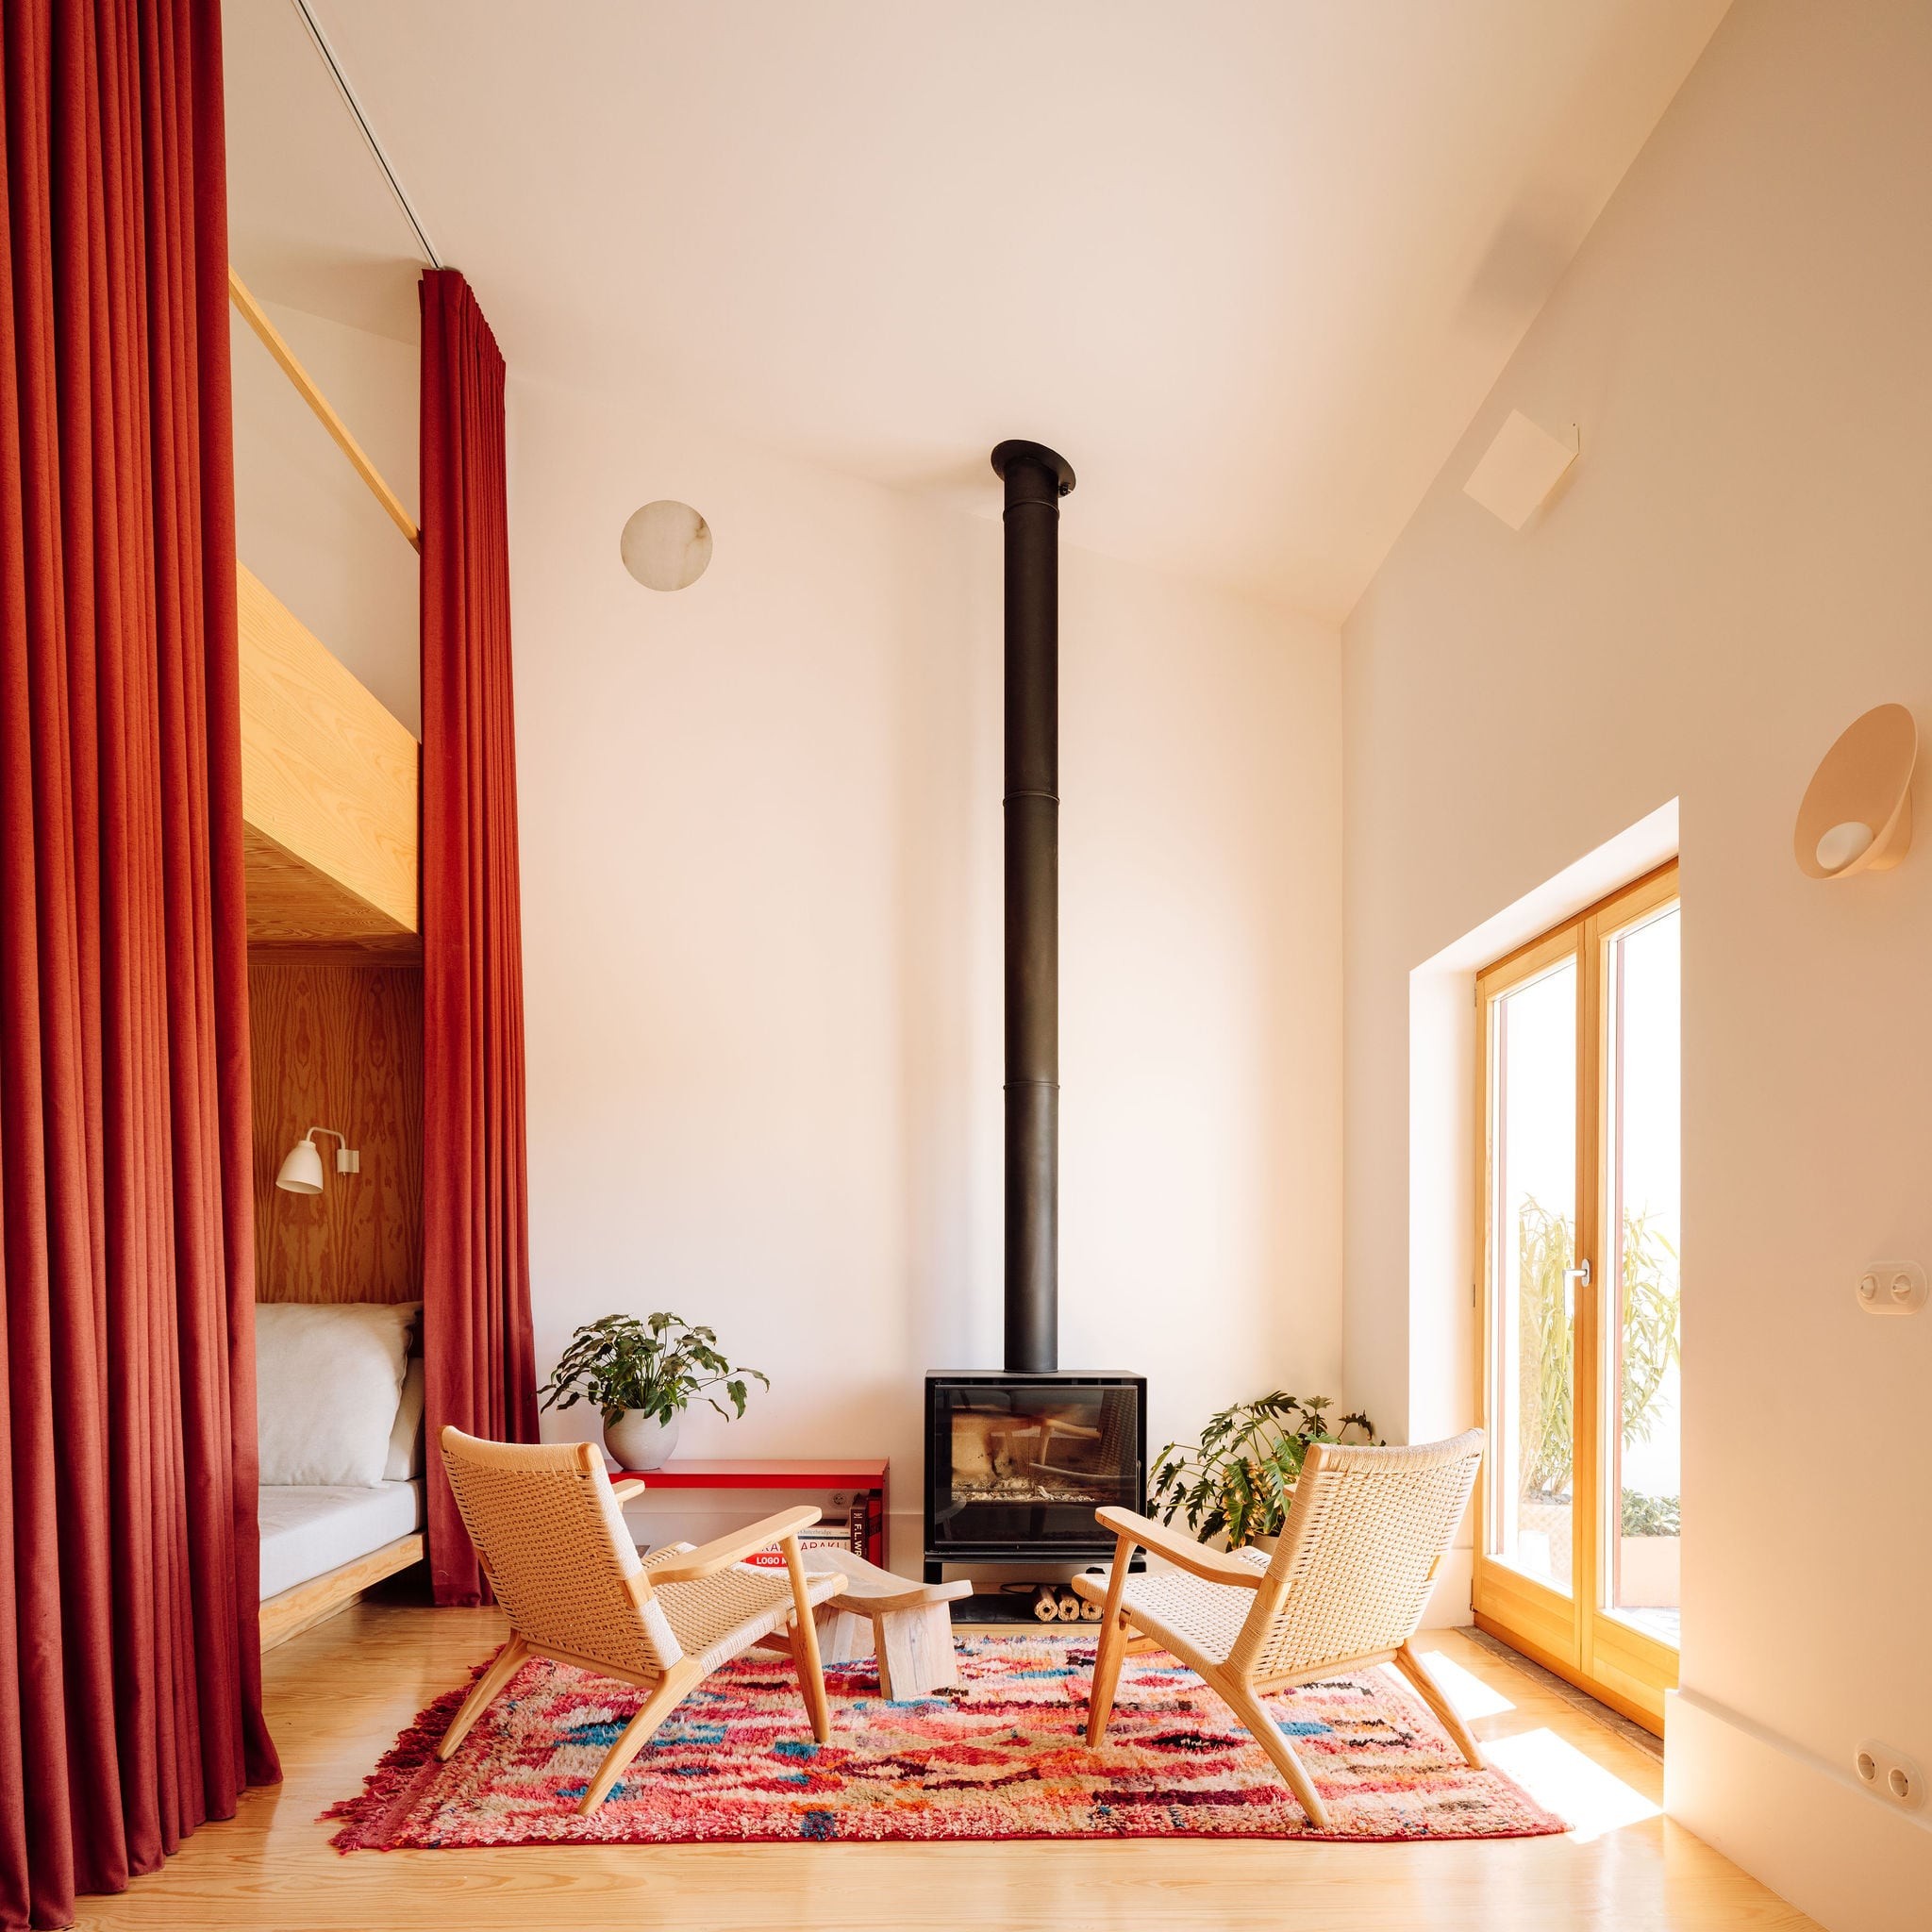 Décor do dia: sala de estar com lareira e clima aconchegante (Foto: Francisco Nogueira)